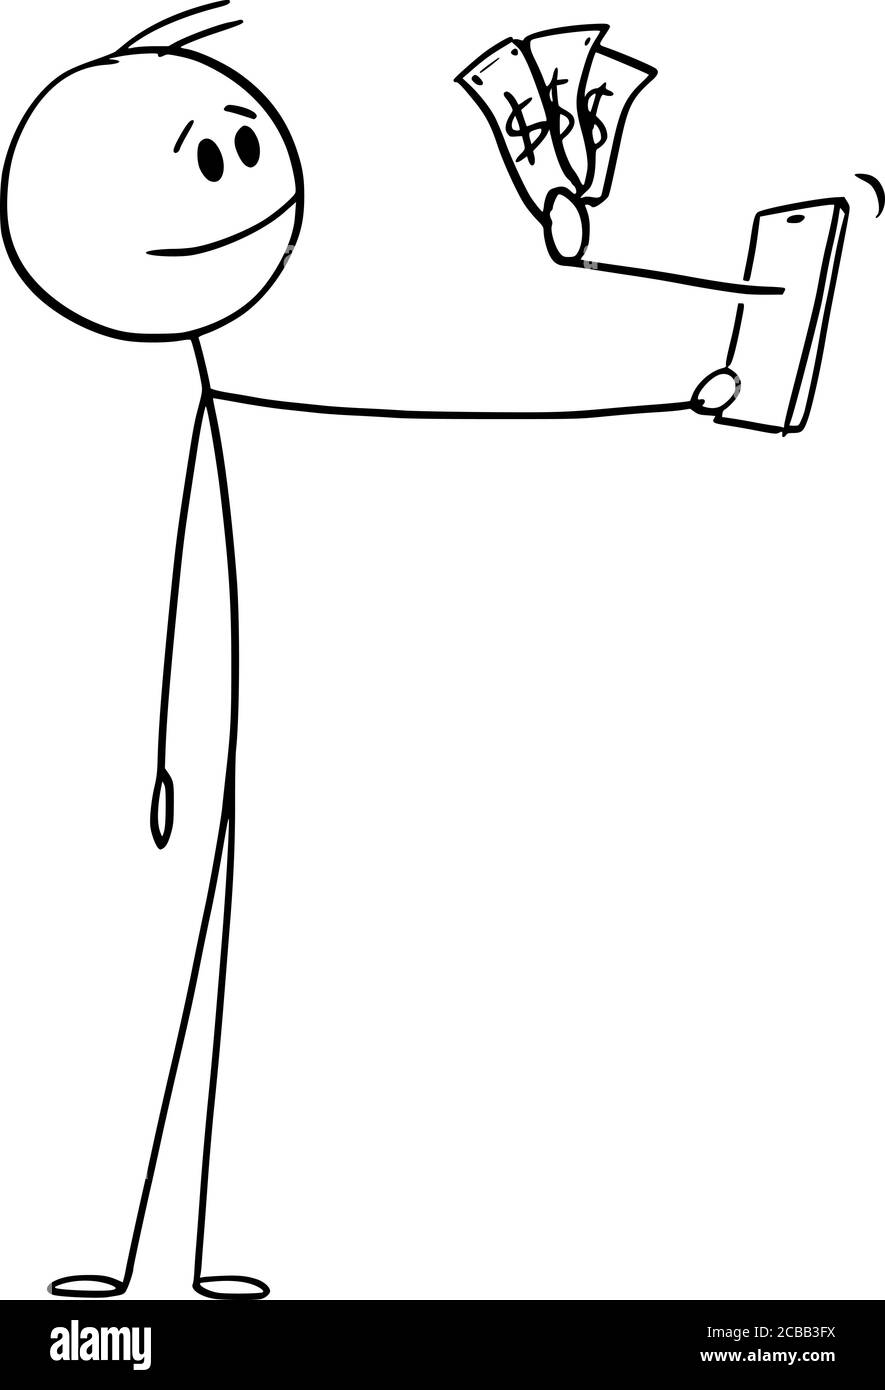 Vektor Cartoon Stick Figur Zeichnung konzeptionelle Illustration von Mann oder Geschäftsmann halten Handy, Hand ragt aus dem Gerät gibt ihm Geld. Online-Punkte sammeln. Stock Vektor